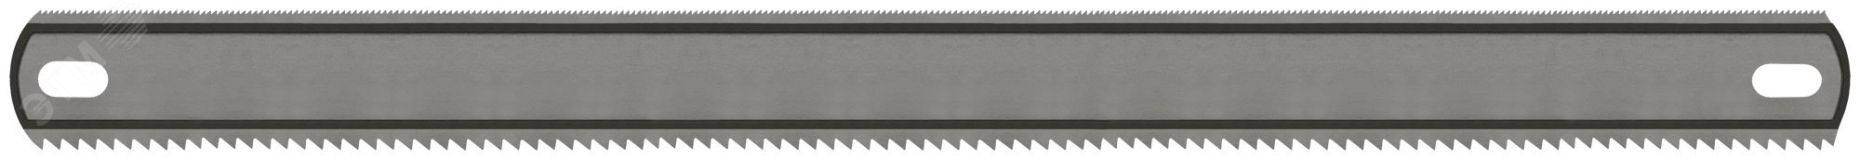 Полотно ножовочное металл/дерево 24 TPI/8 TPI каленый зуб широкое двустороннее 300х24 мм 40161 FIT